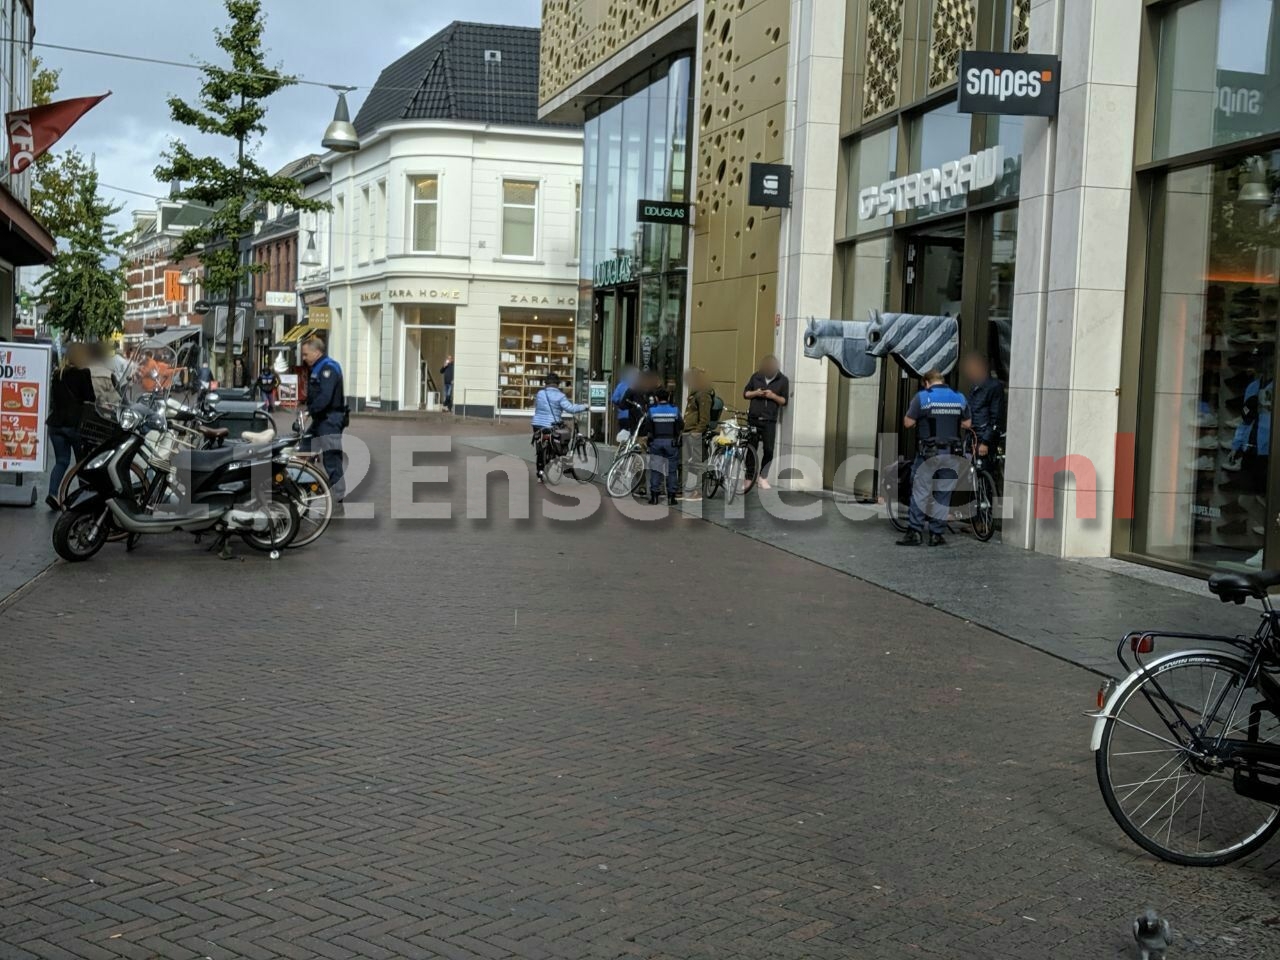 73 bekeuringen bij controle voetgangersgebied centrum Enschede